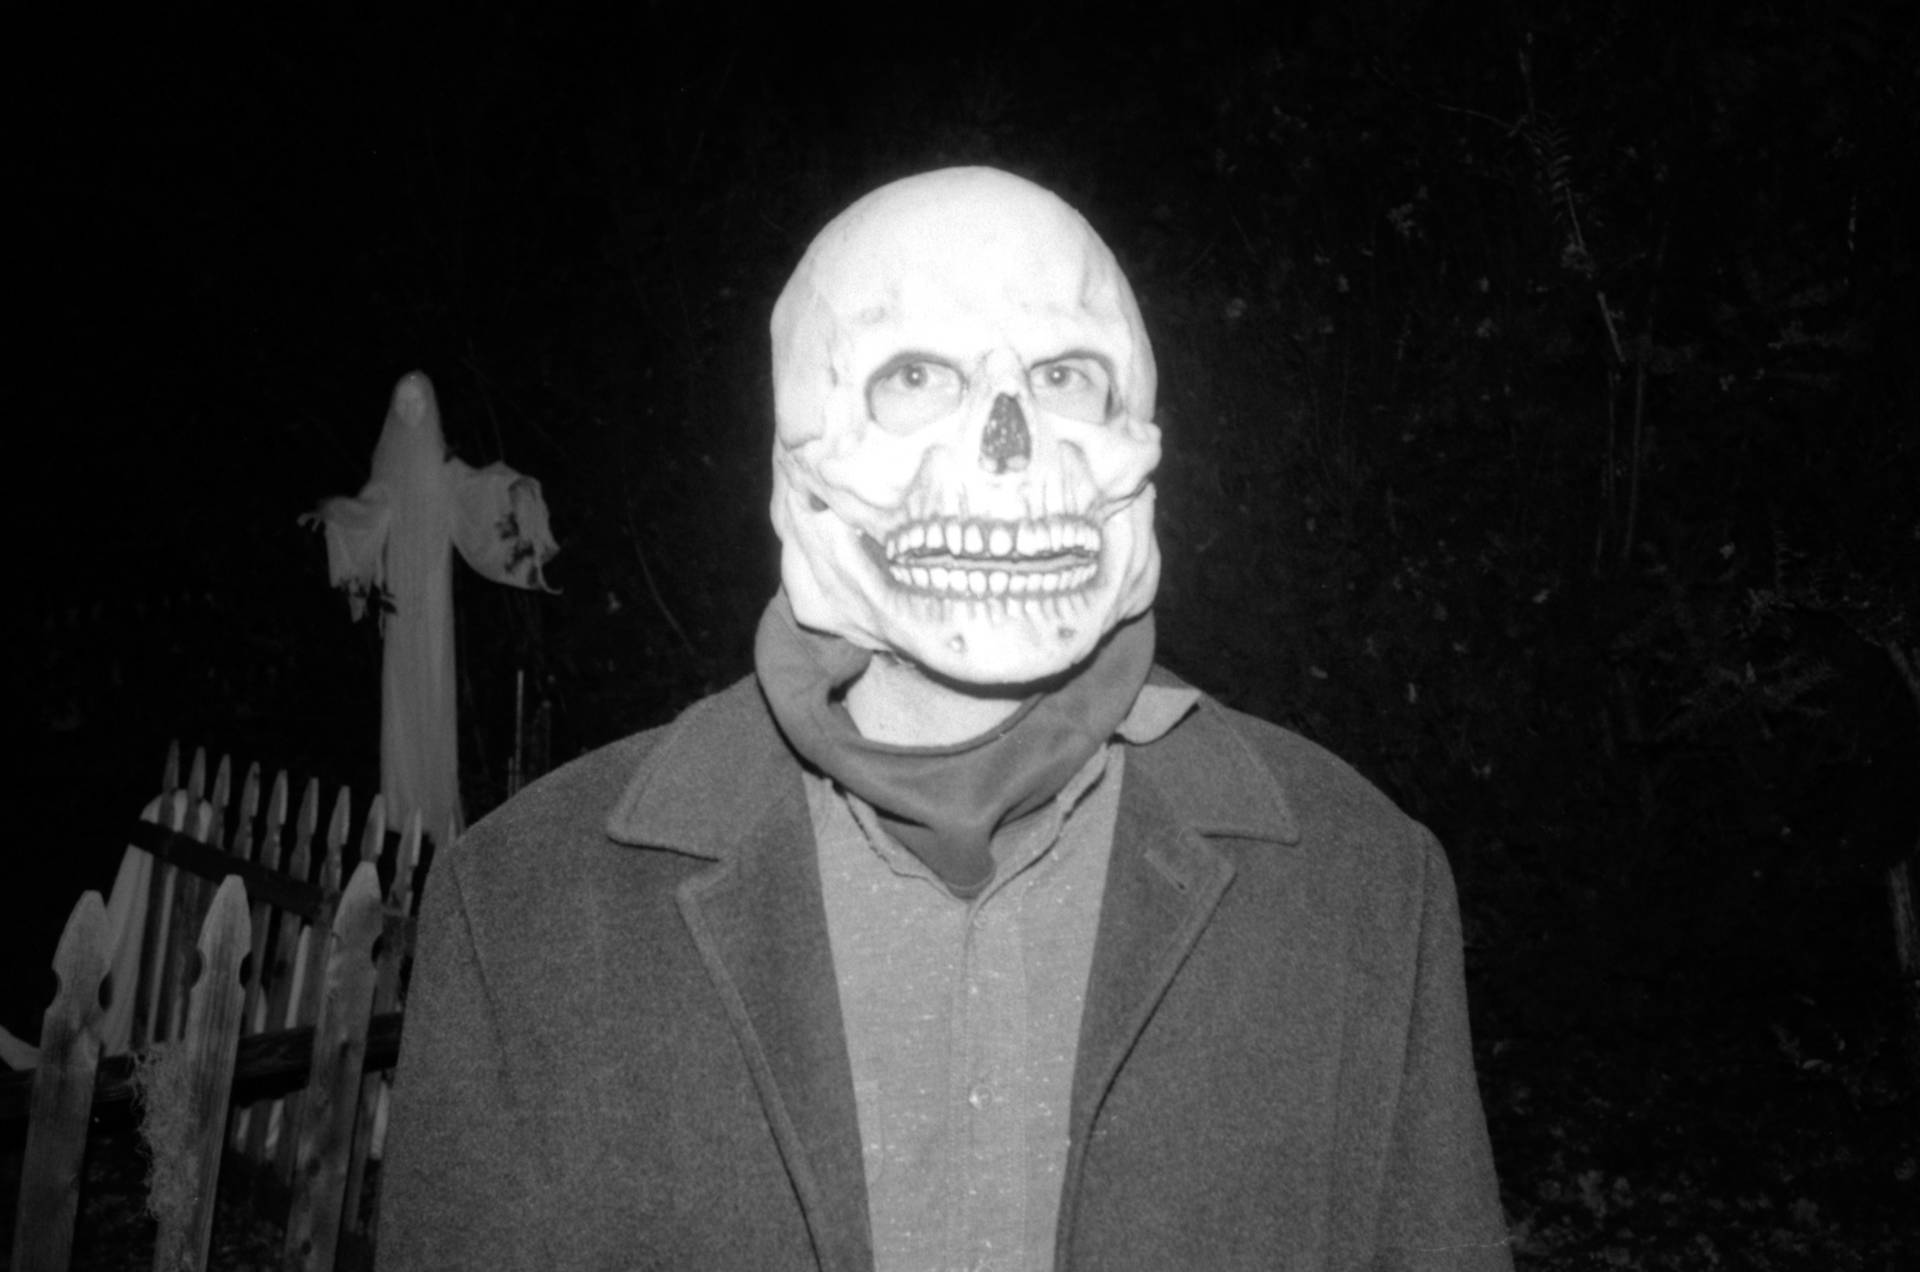 Scary Skull Mask Background